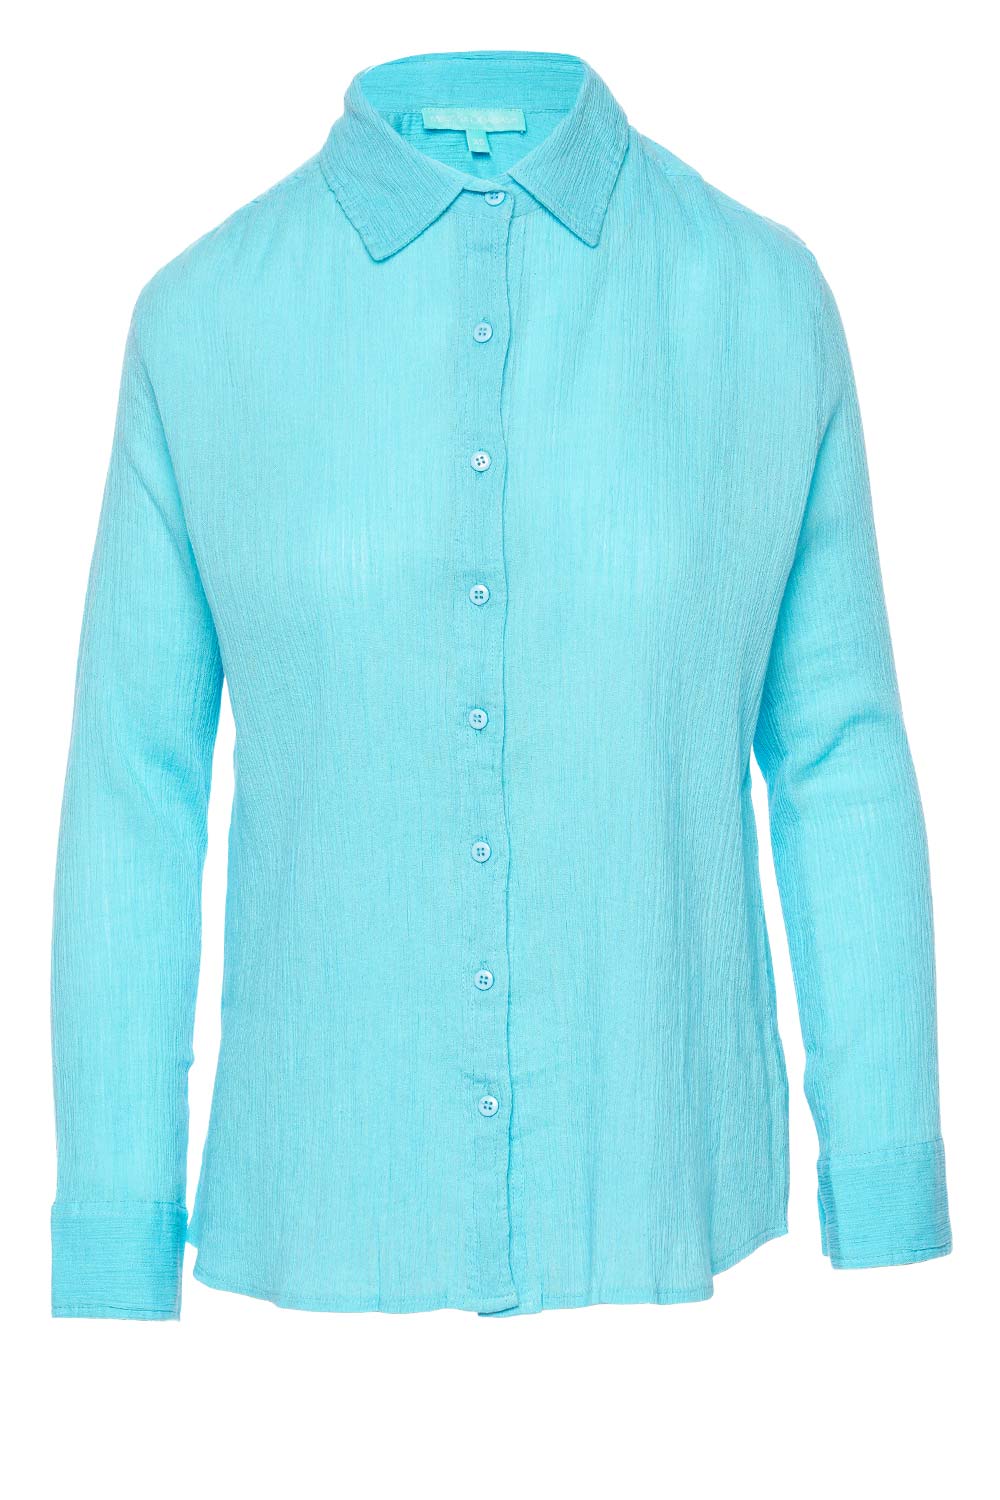 Melissa Odabash Tina Turquoise Cotton Gauze Cover Up Shirt